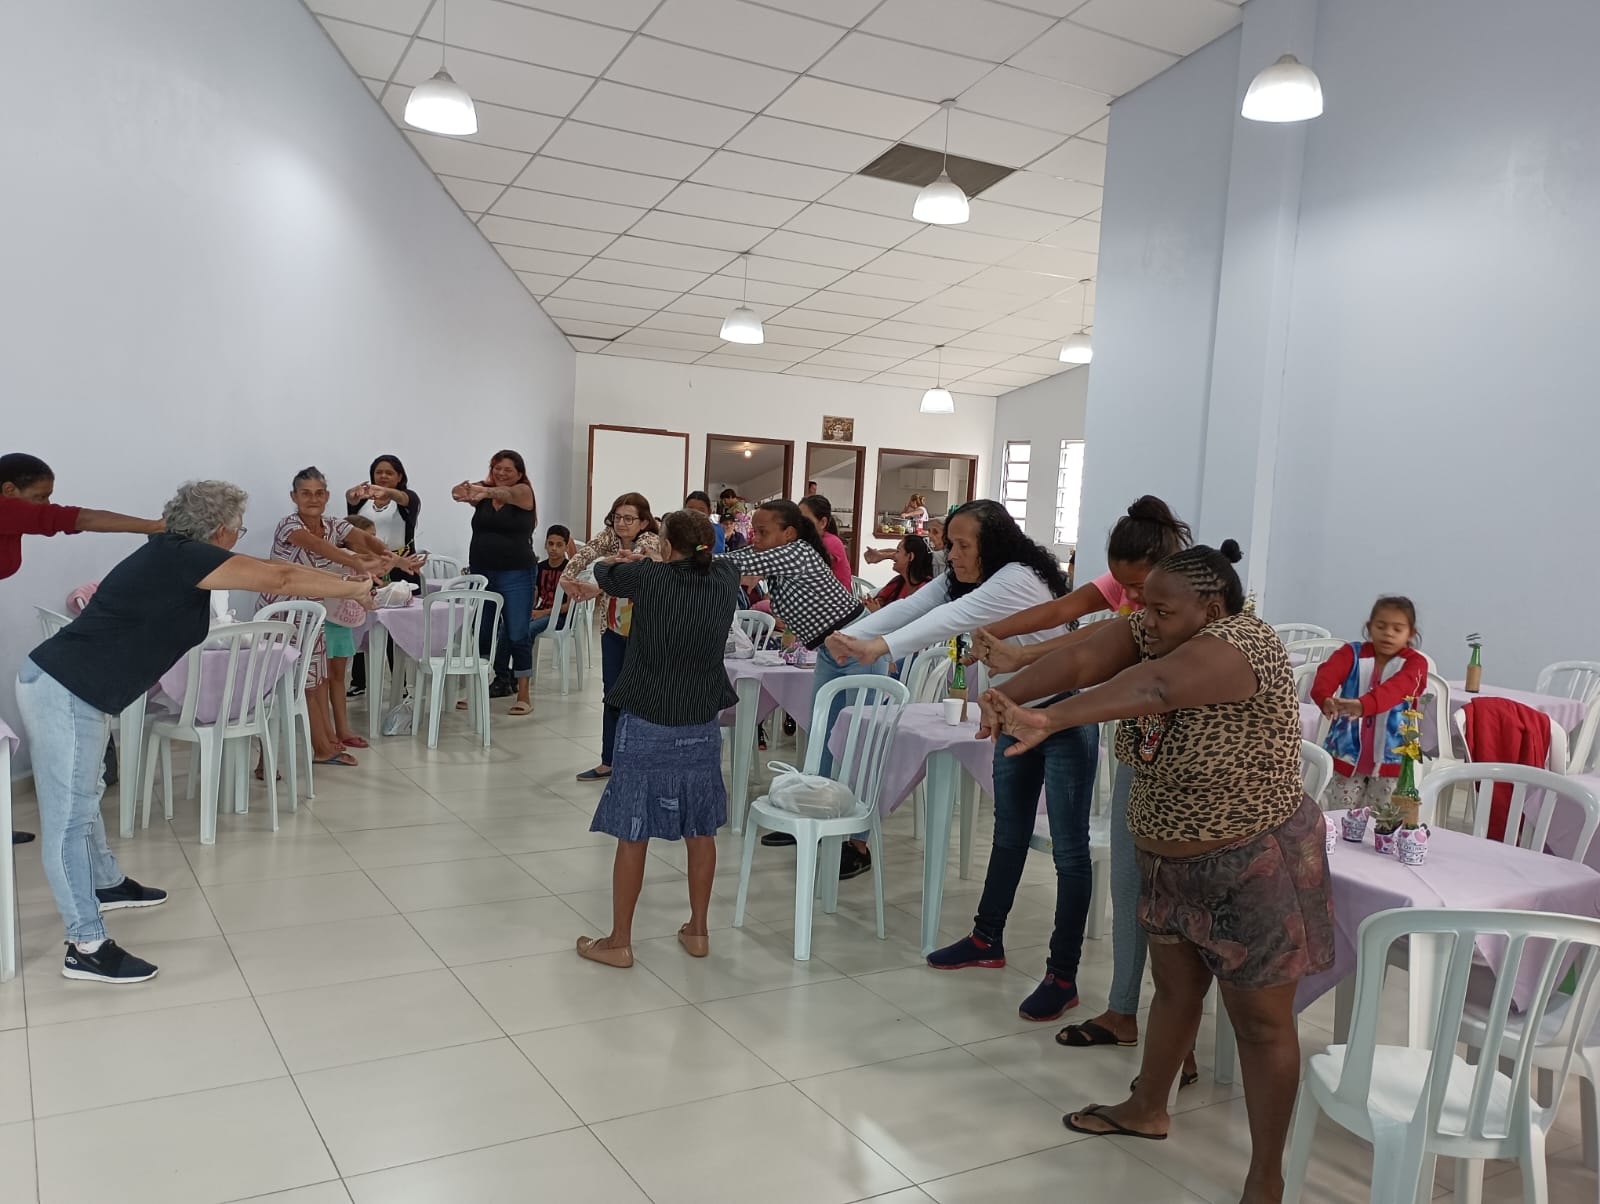 Curso de Fisioterapia da Unisul campus Itajaí Celebra Dia das Mães com Atividades na Igreja Dom Bosco